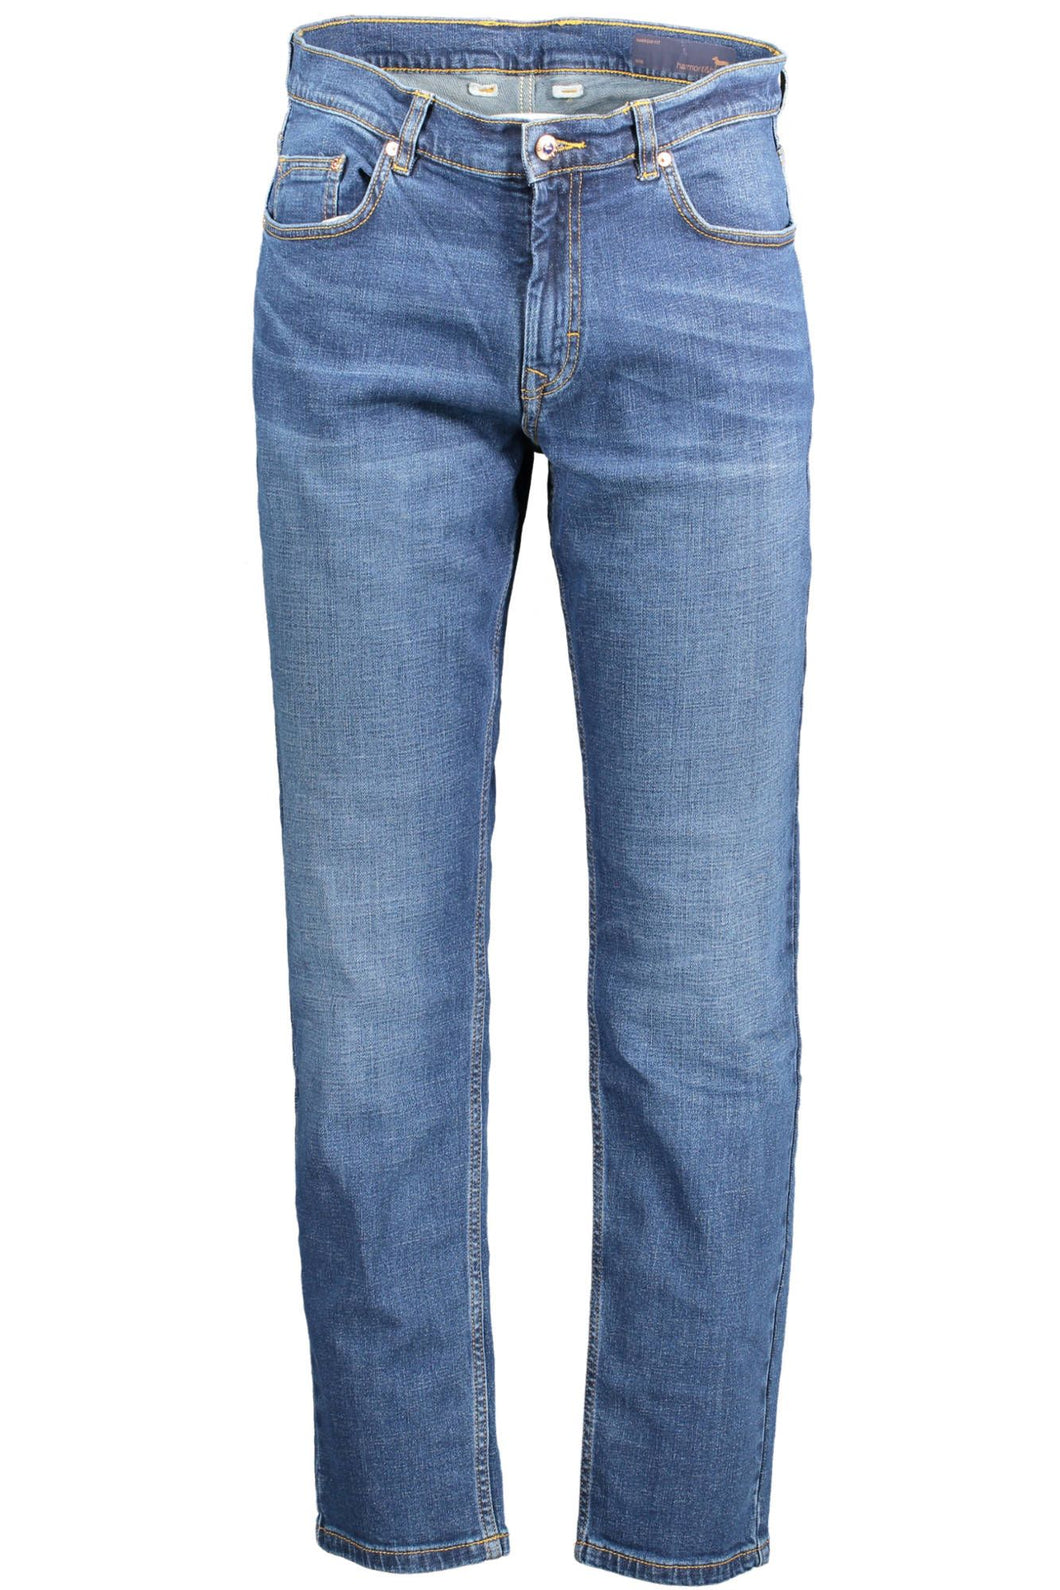 Harmont & Blaine Blue Cotton Jeans & Pant